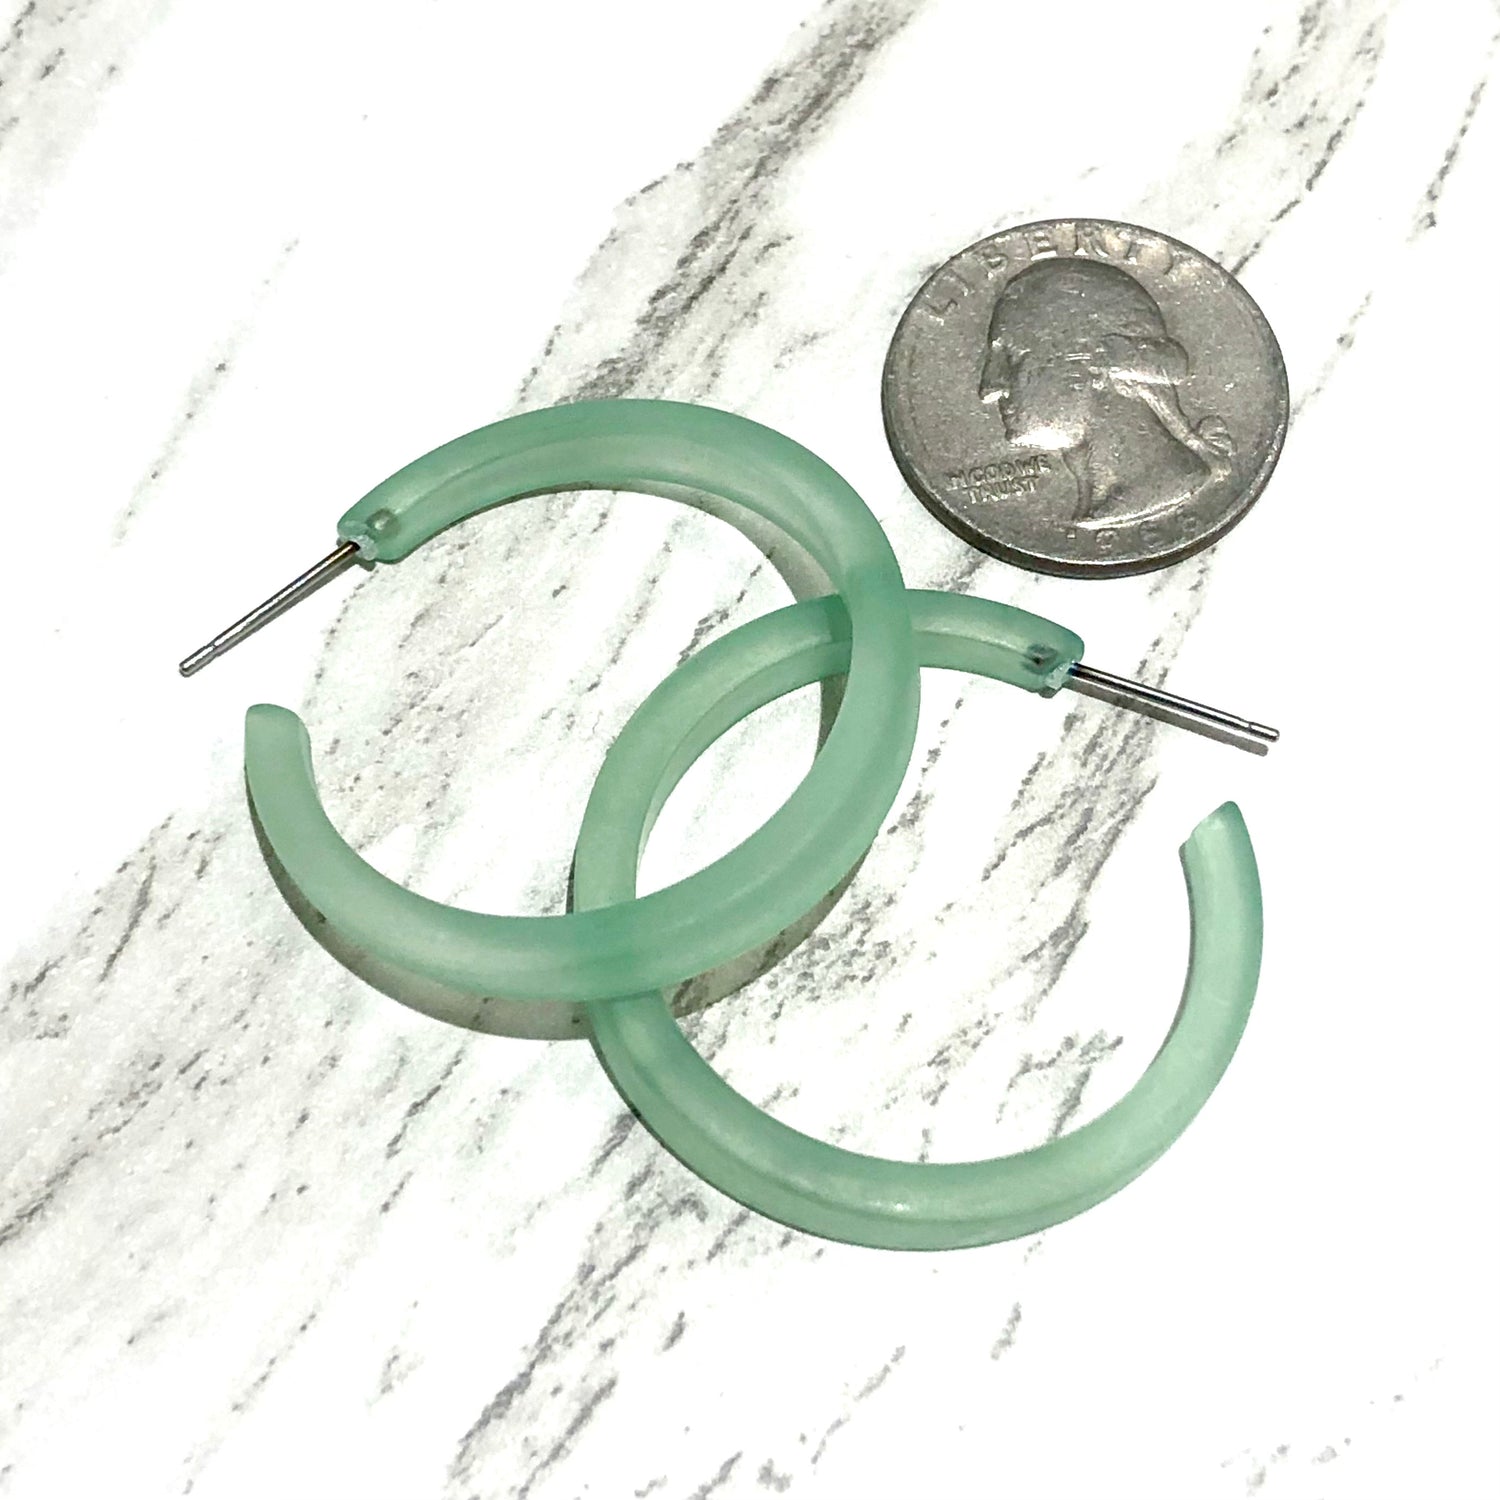 mint green earrings